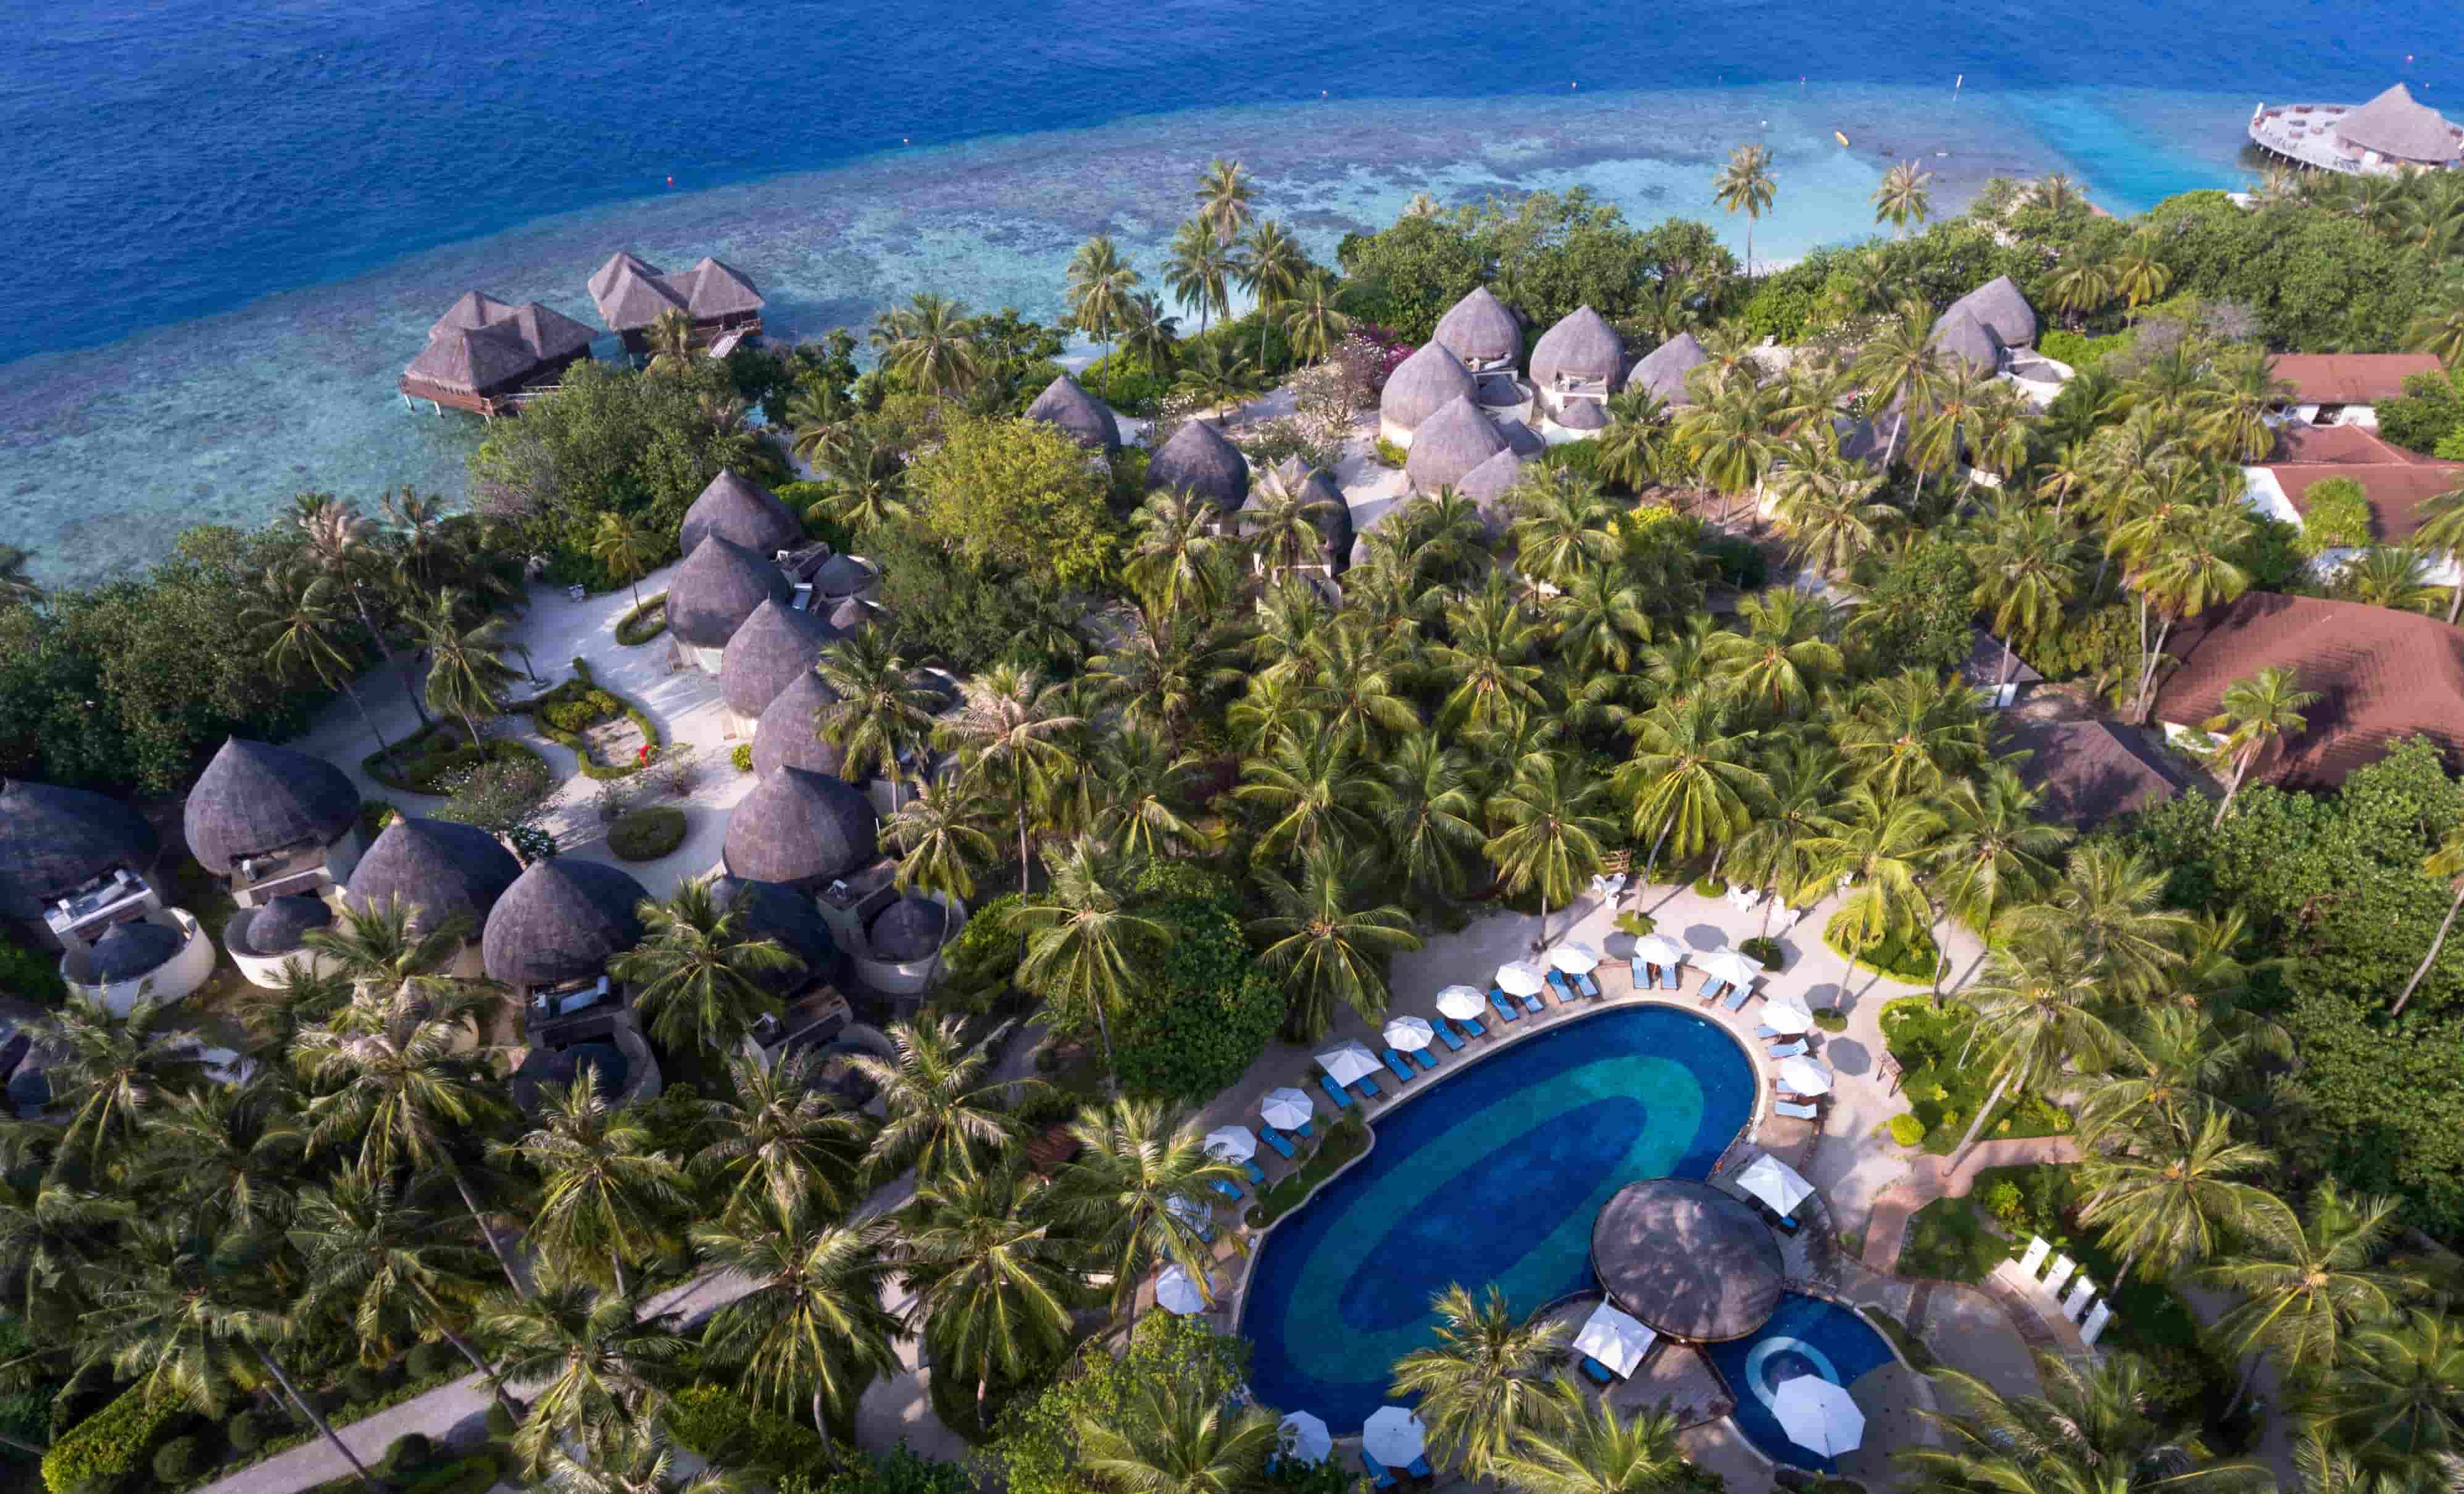 Bandos Maldives Holiday Deal